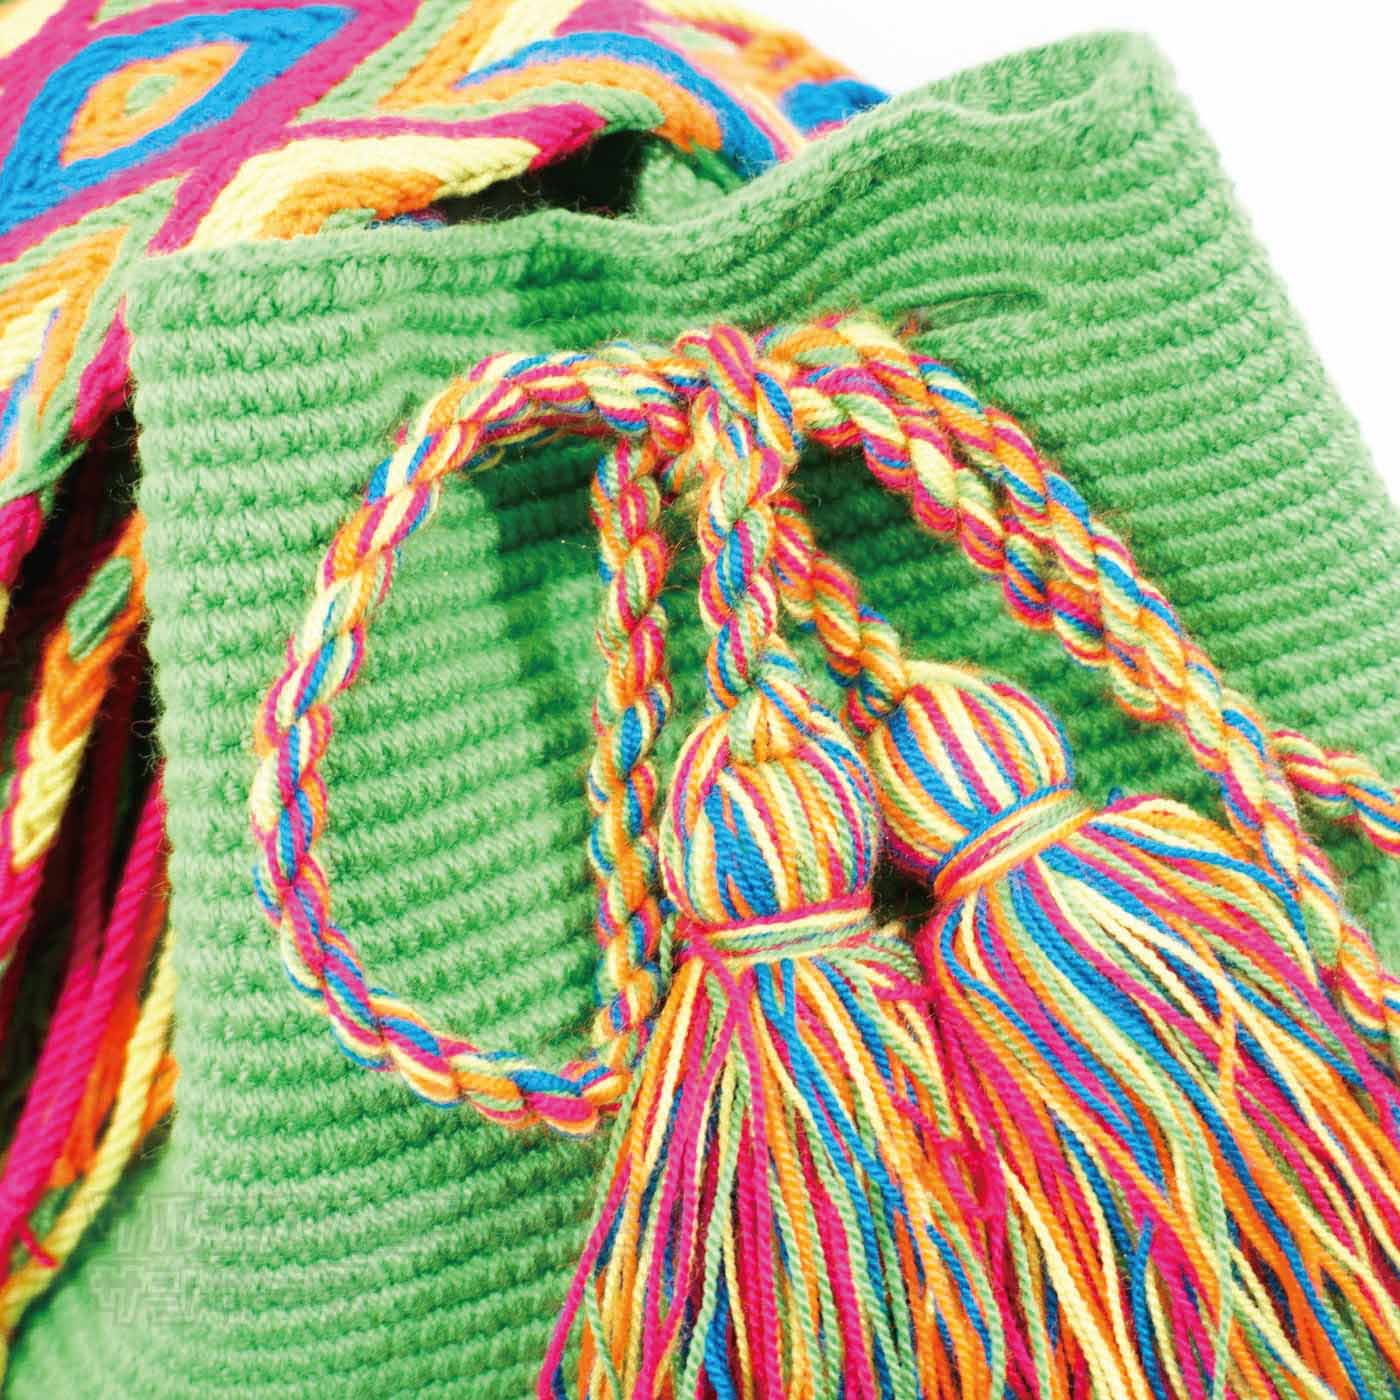 ワユーバッグ wayuu bag マザーズバッグ ショルダーバッグ レディース 大容量 オシャレ ハンドメイド 南米 コロンビア 伝統 総柄 民族柄 エスニック ファッションブラック